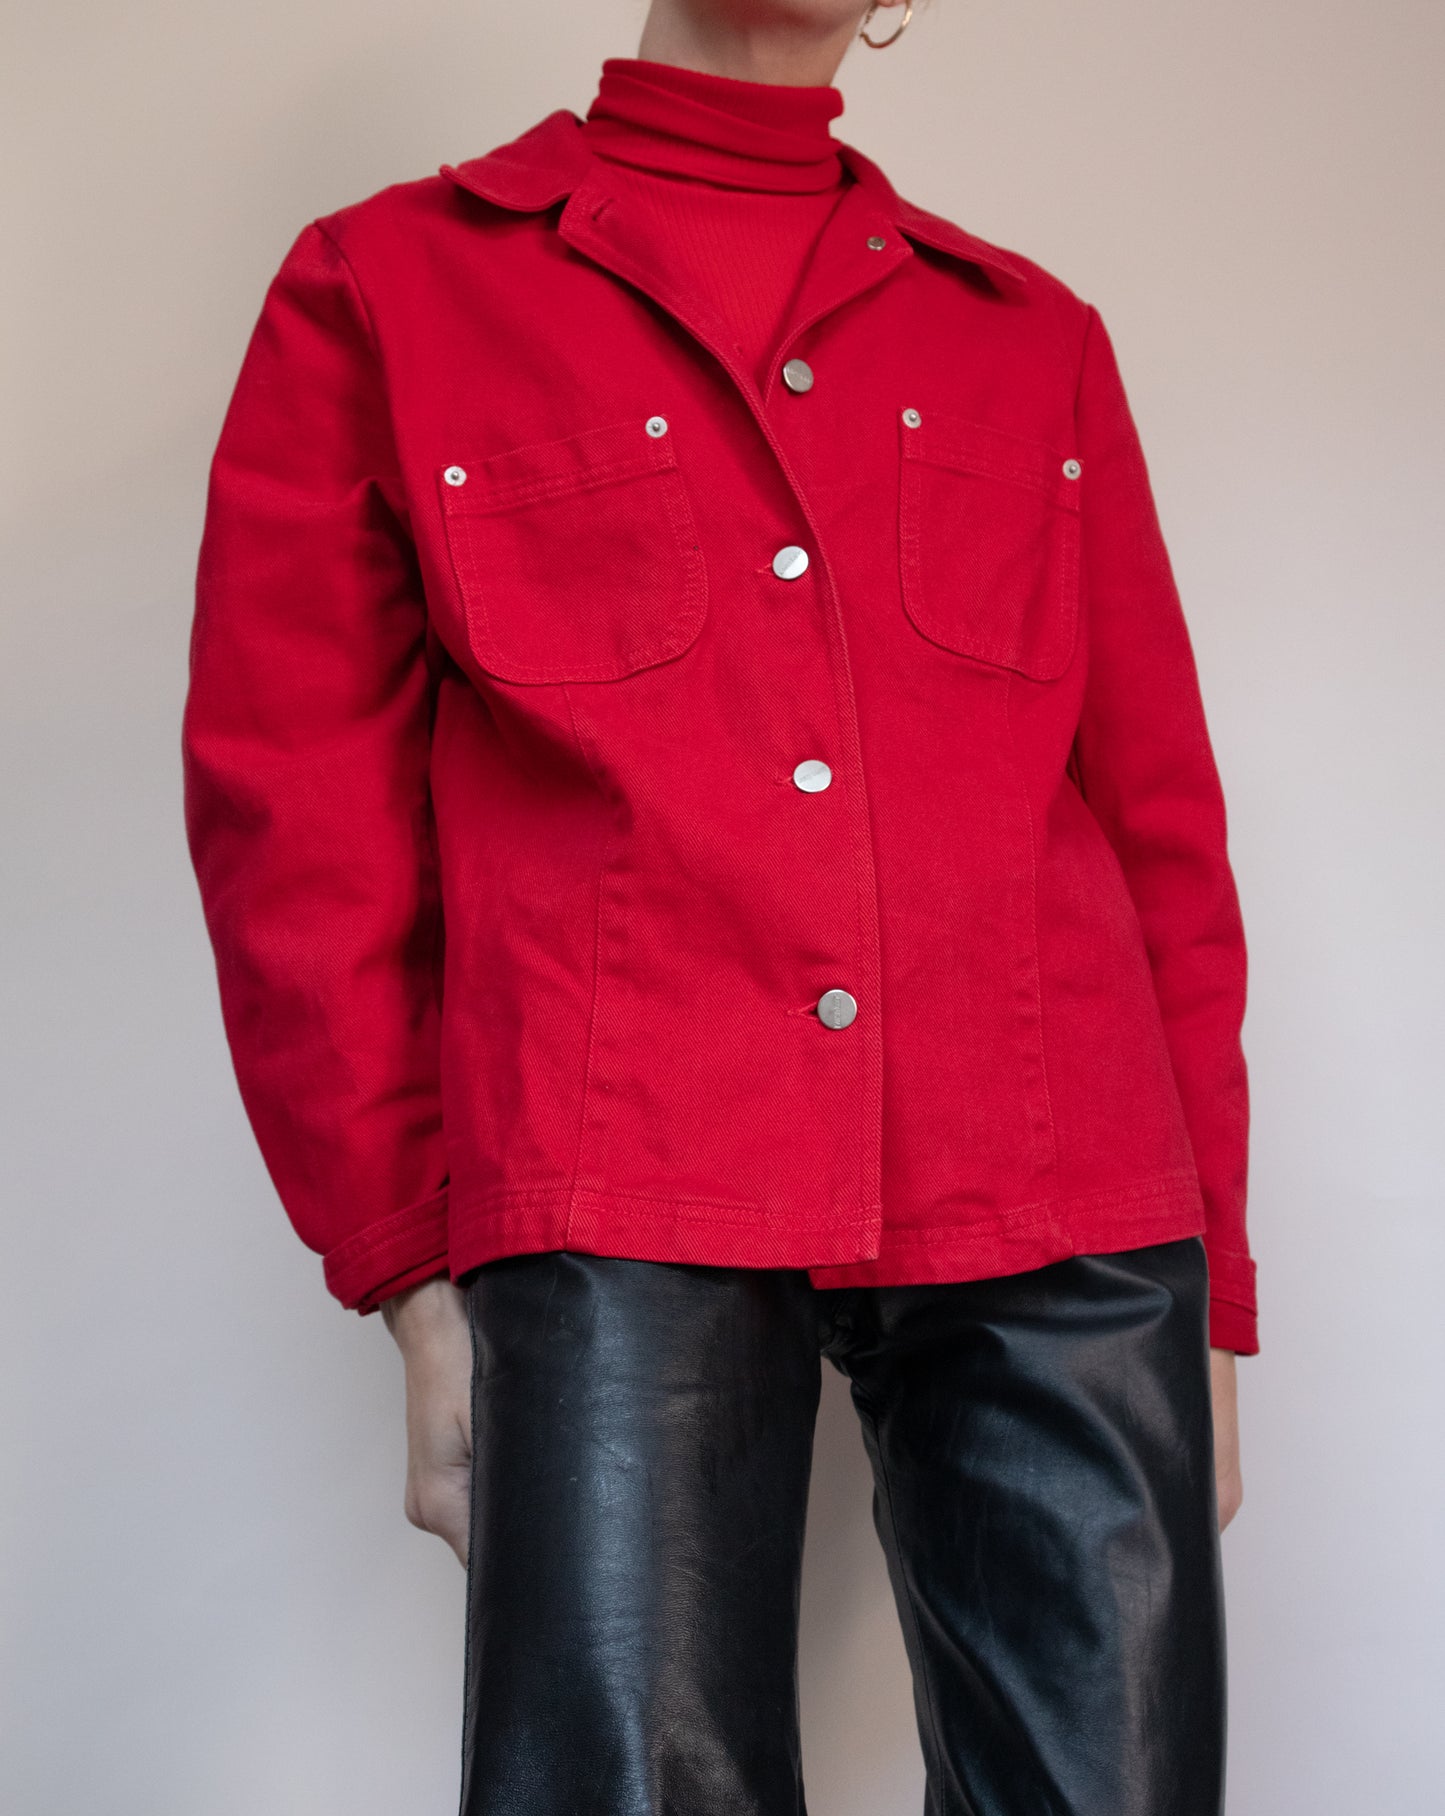 90s Red Denim Jacket